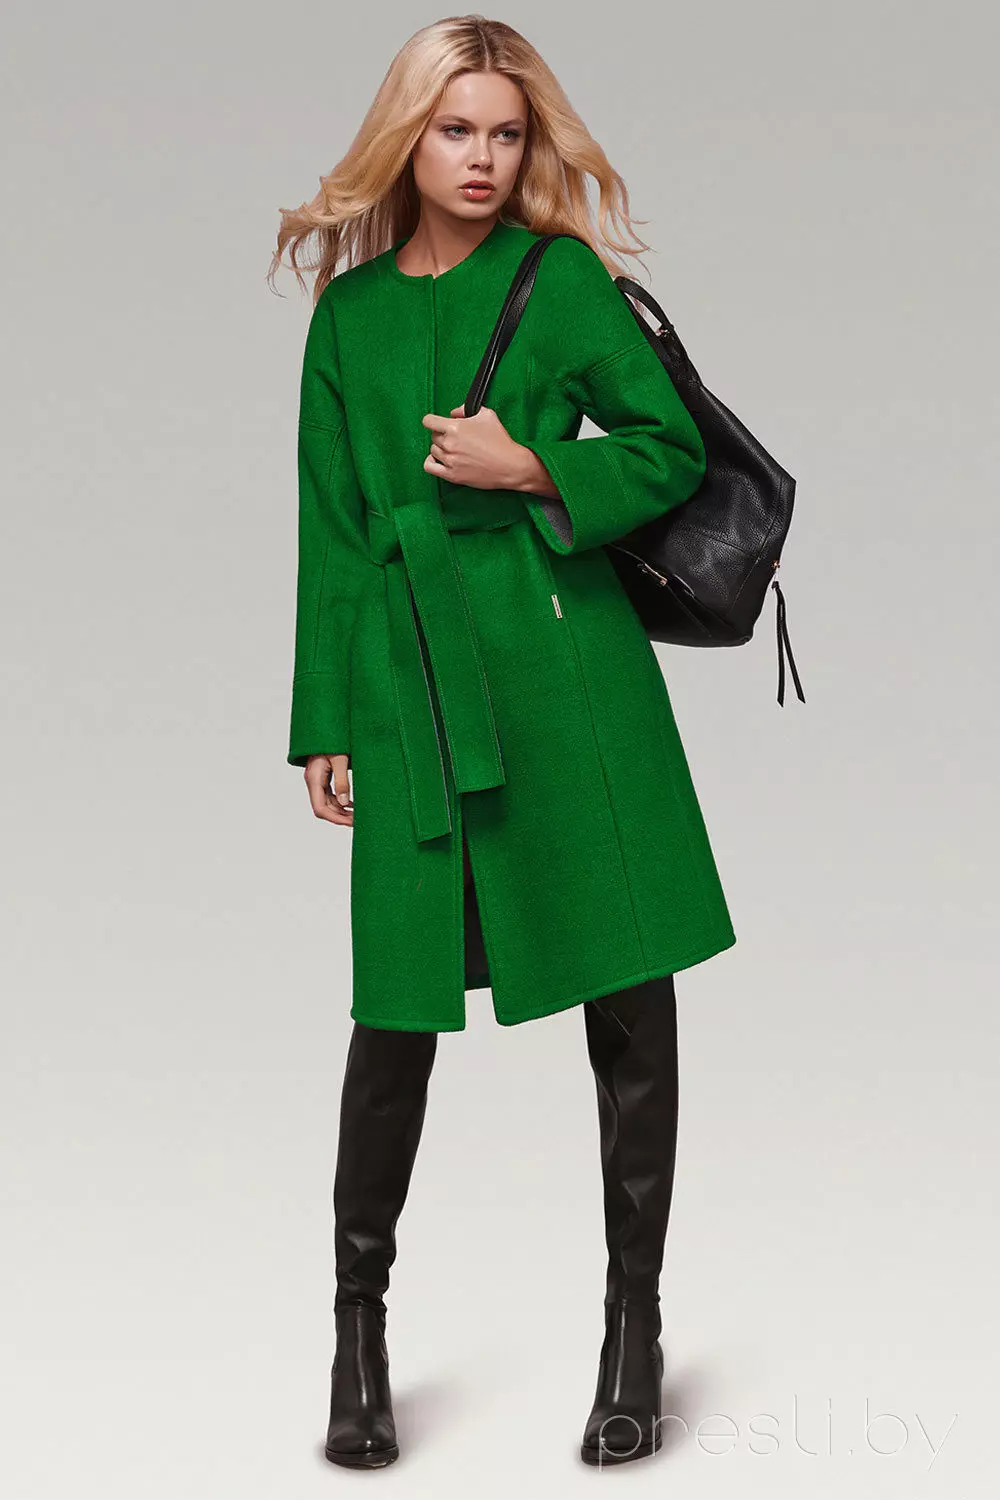 Что купить на весну верхняя одежда. Зеленое пальто. Зелёное пальто женские. Ярко зеленое пальто. Весеннее пальто.